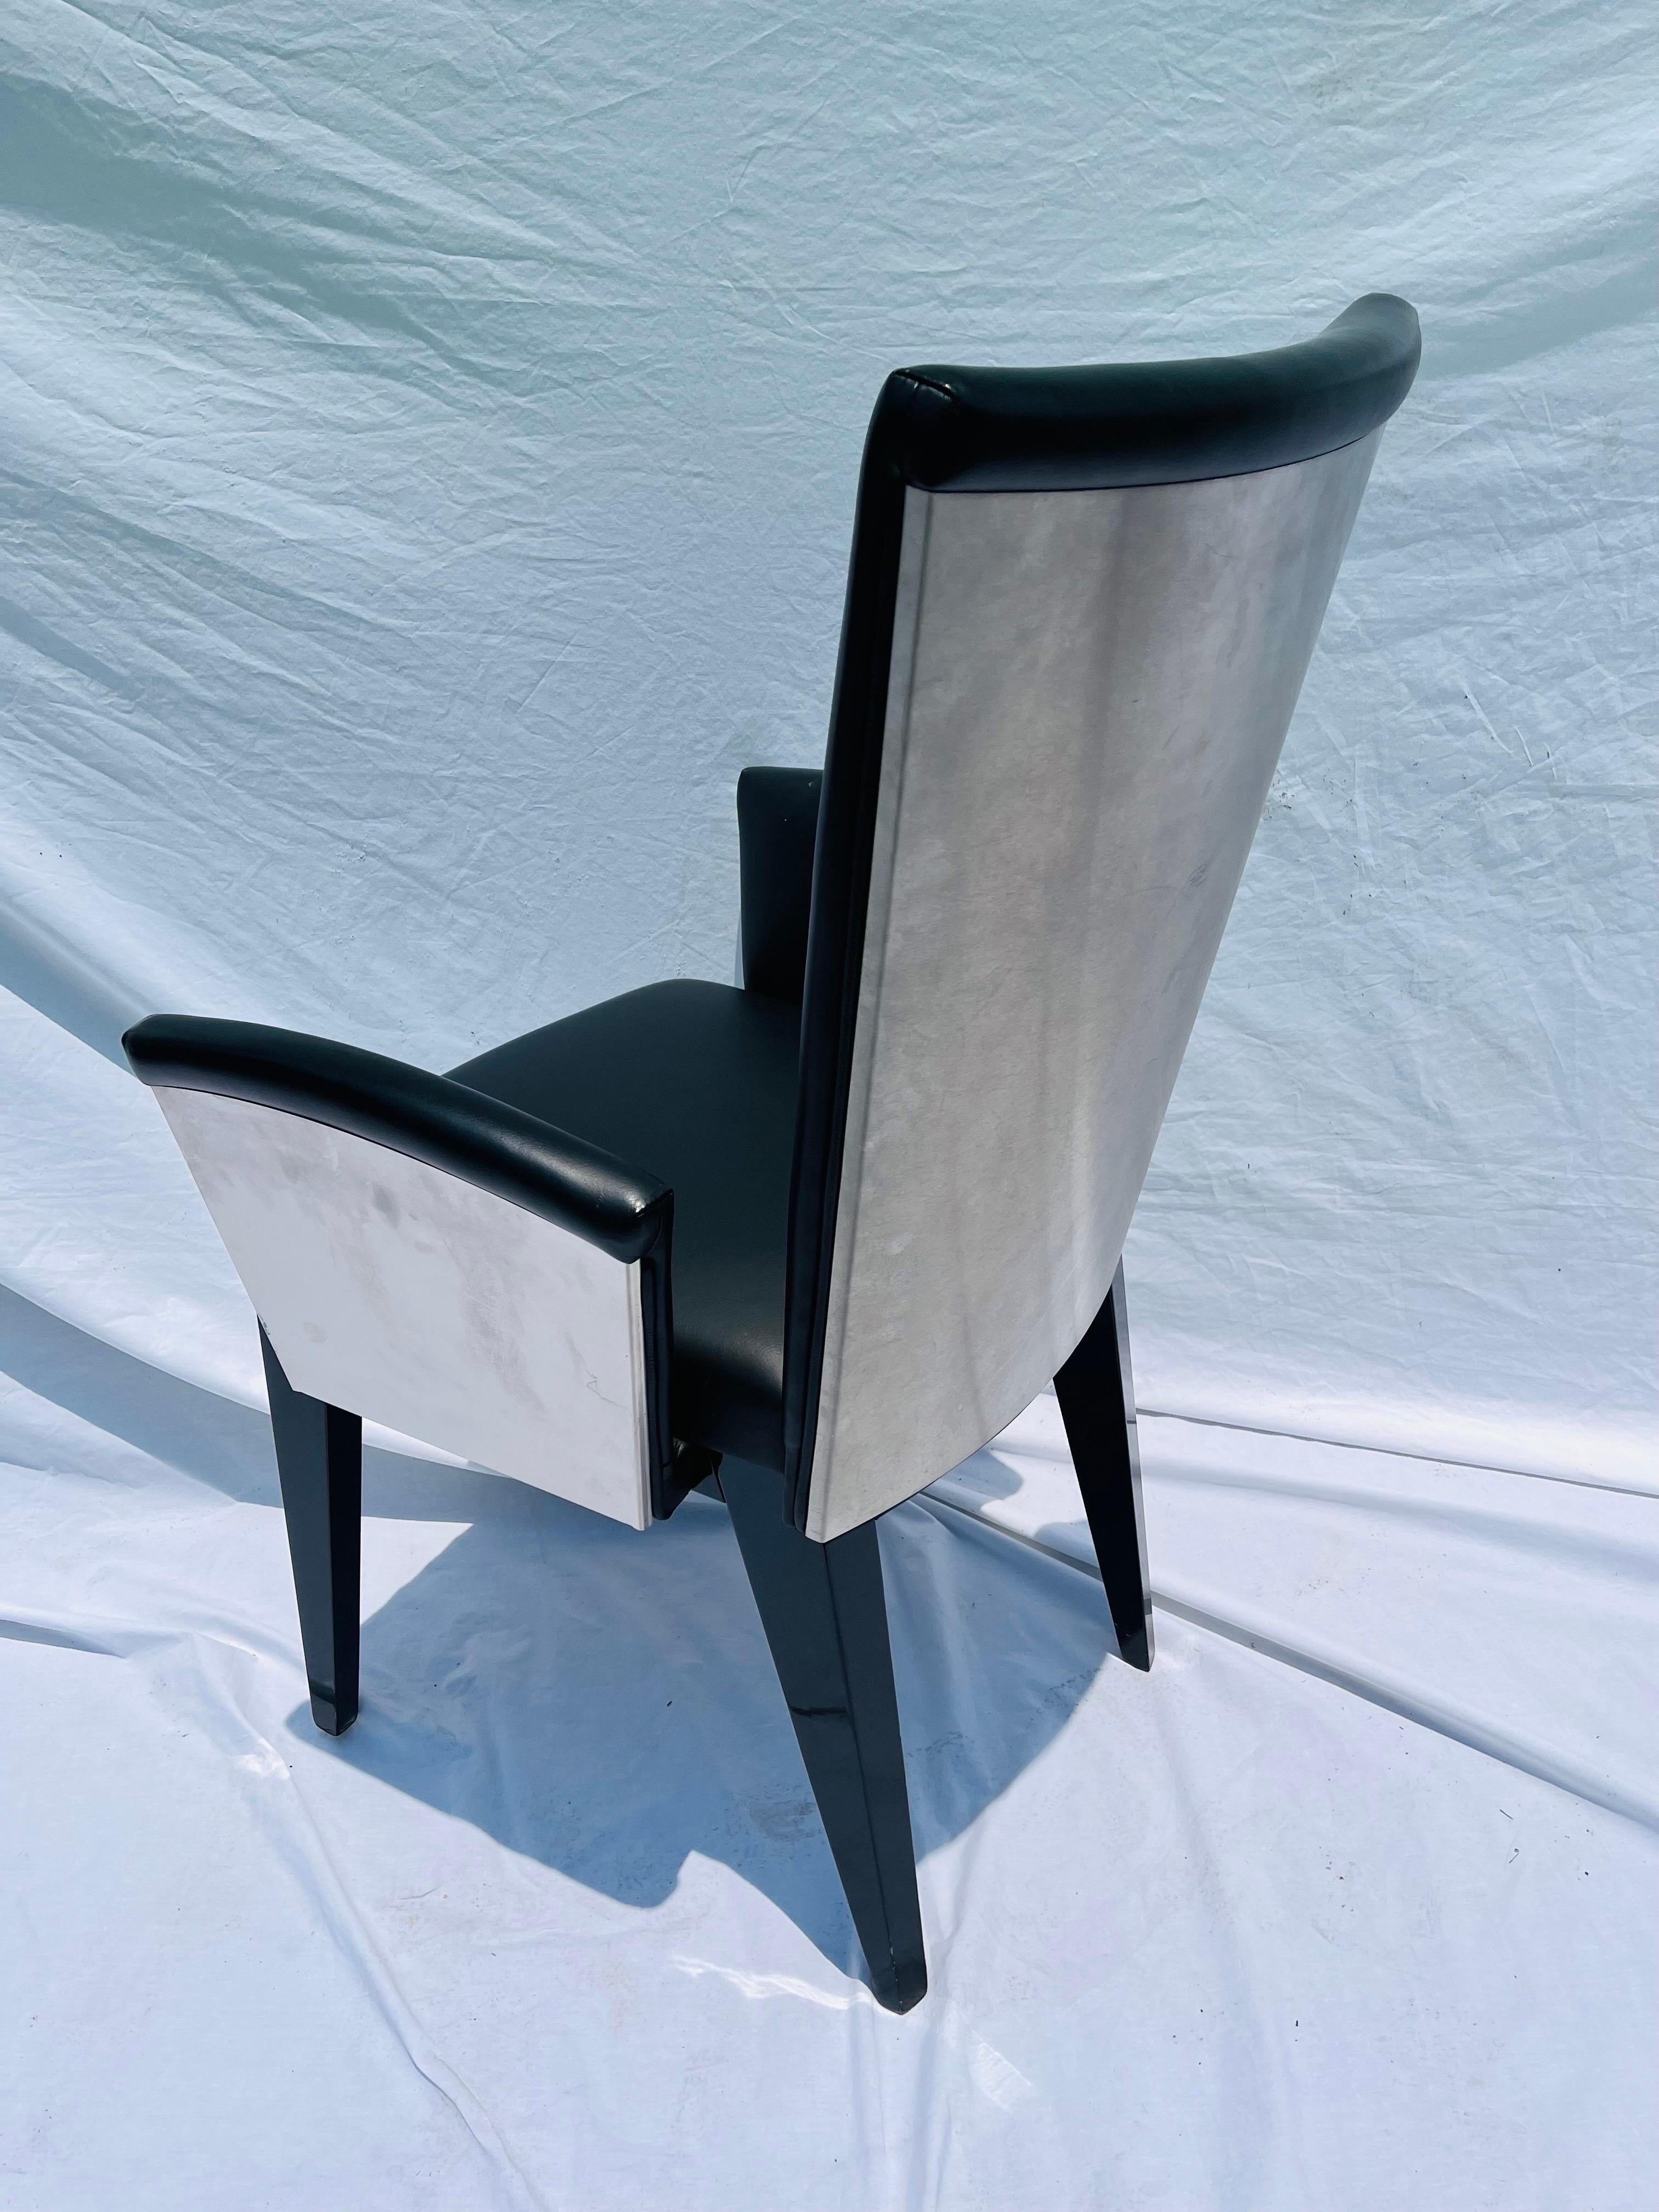 Ein Satz von acht italienischen Esszimmerstühlen aus Leder, Edelstahl und Holz im postmodernen Stil. Die klaren Linien sind eindeutig von den klassischen Designern Renzo Fauciglietti und Graziella Bianchi inspiriert, als sie den Stuhl Bottega für